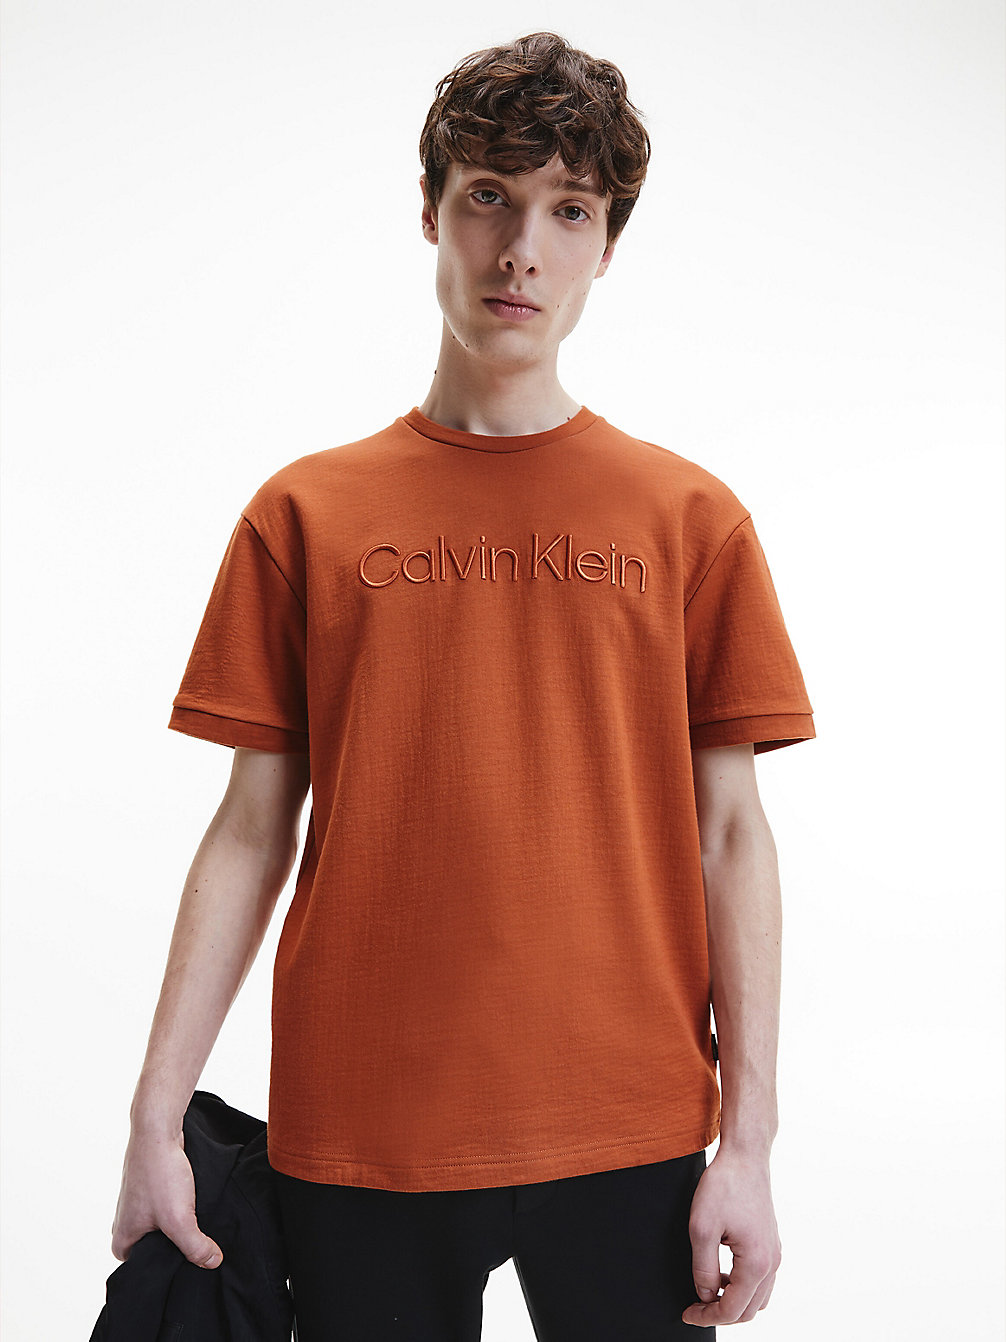 GINGERBREAD BROWN Spacer-Logo-T-Shirt undefined Herren Calvin Klein